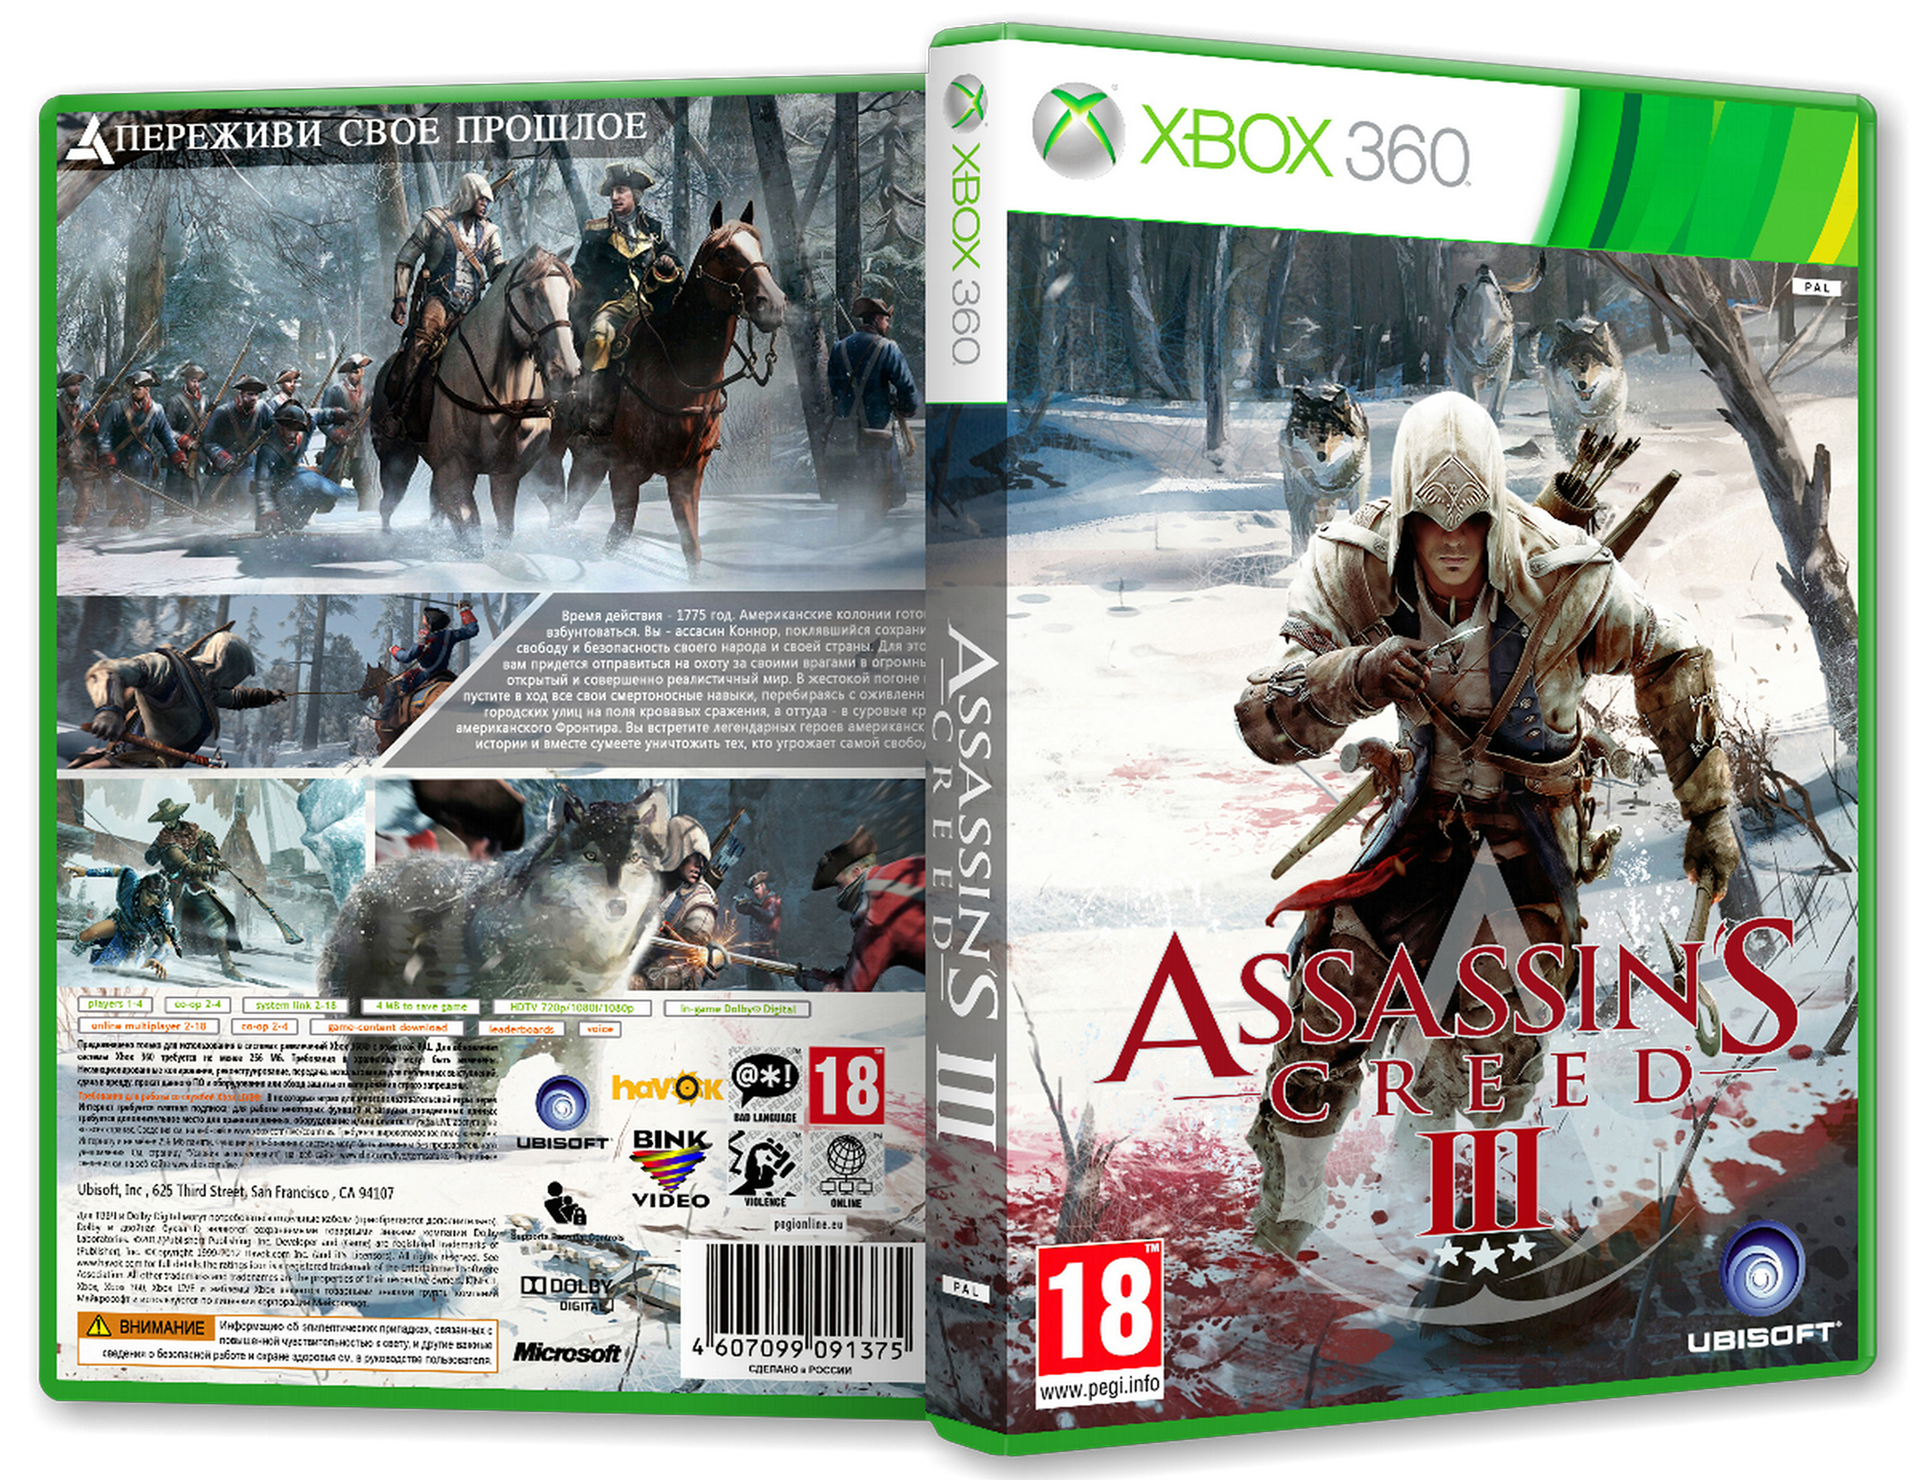 Ассасин Крид 3 Xbox 360. Assassins Creed 3 [Xbox 360]. Ассасин Крид 3 на хбокс 360. Assassins Creed 3 диск для Xbox 360. Assassin s xbox 360